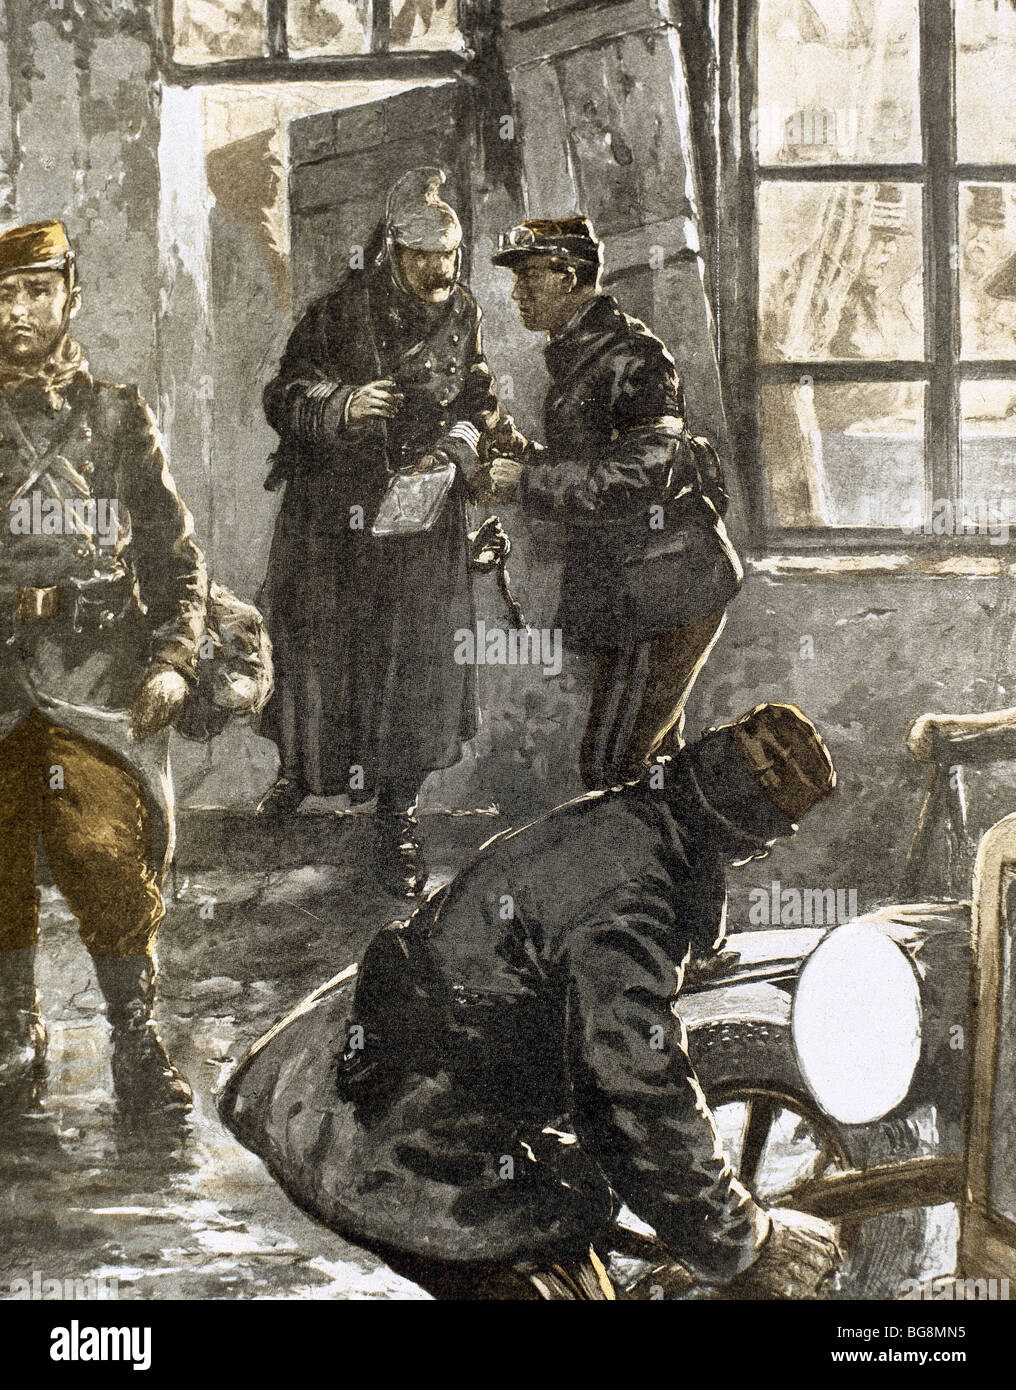 Ersten Weltkrieg (1914-1918). Generals Joffre und Französisch studieren den Fortschritt der Vorgänge in der kämpfenden Linie in Flandern. Stockfoto